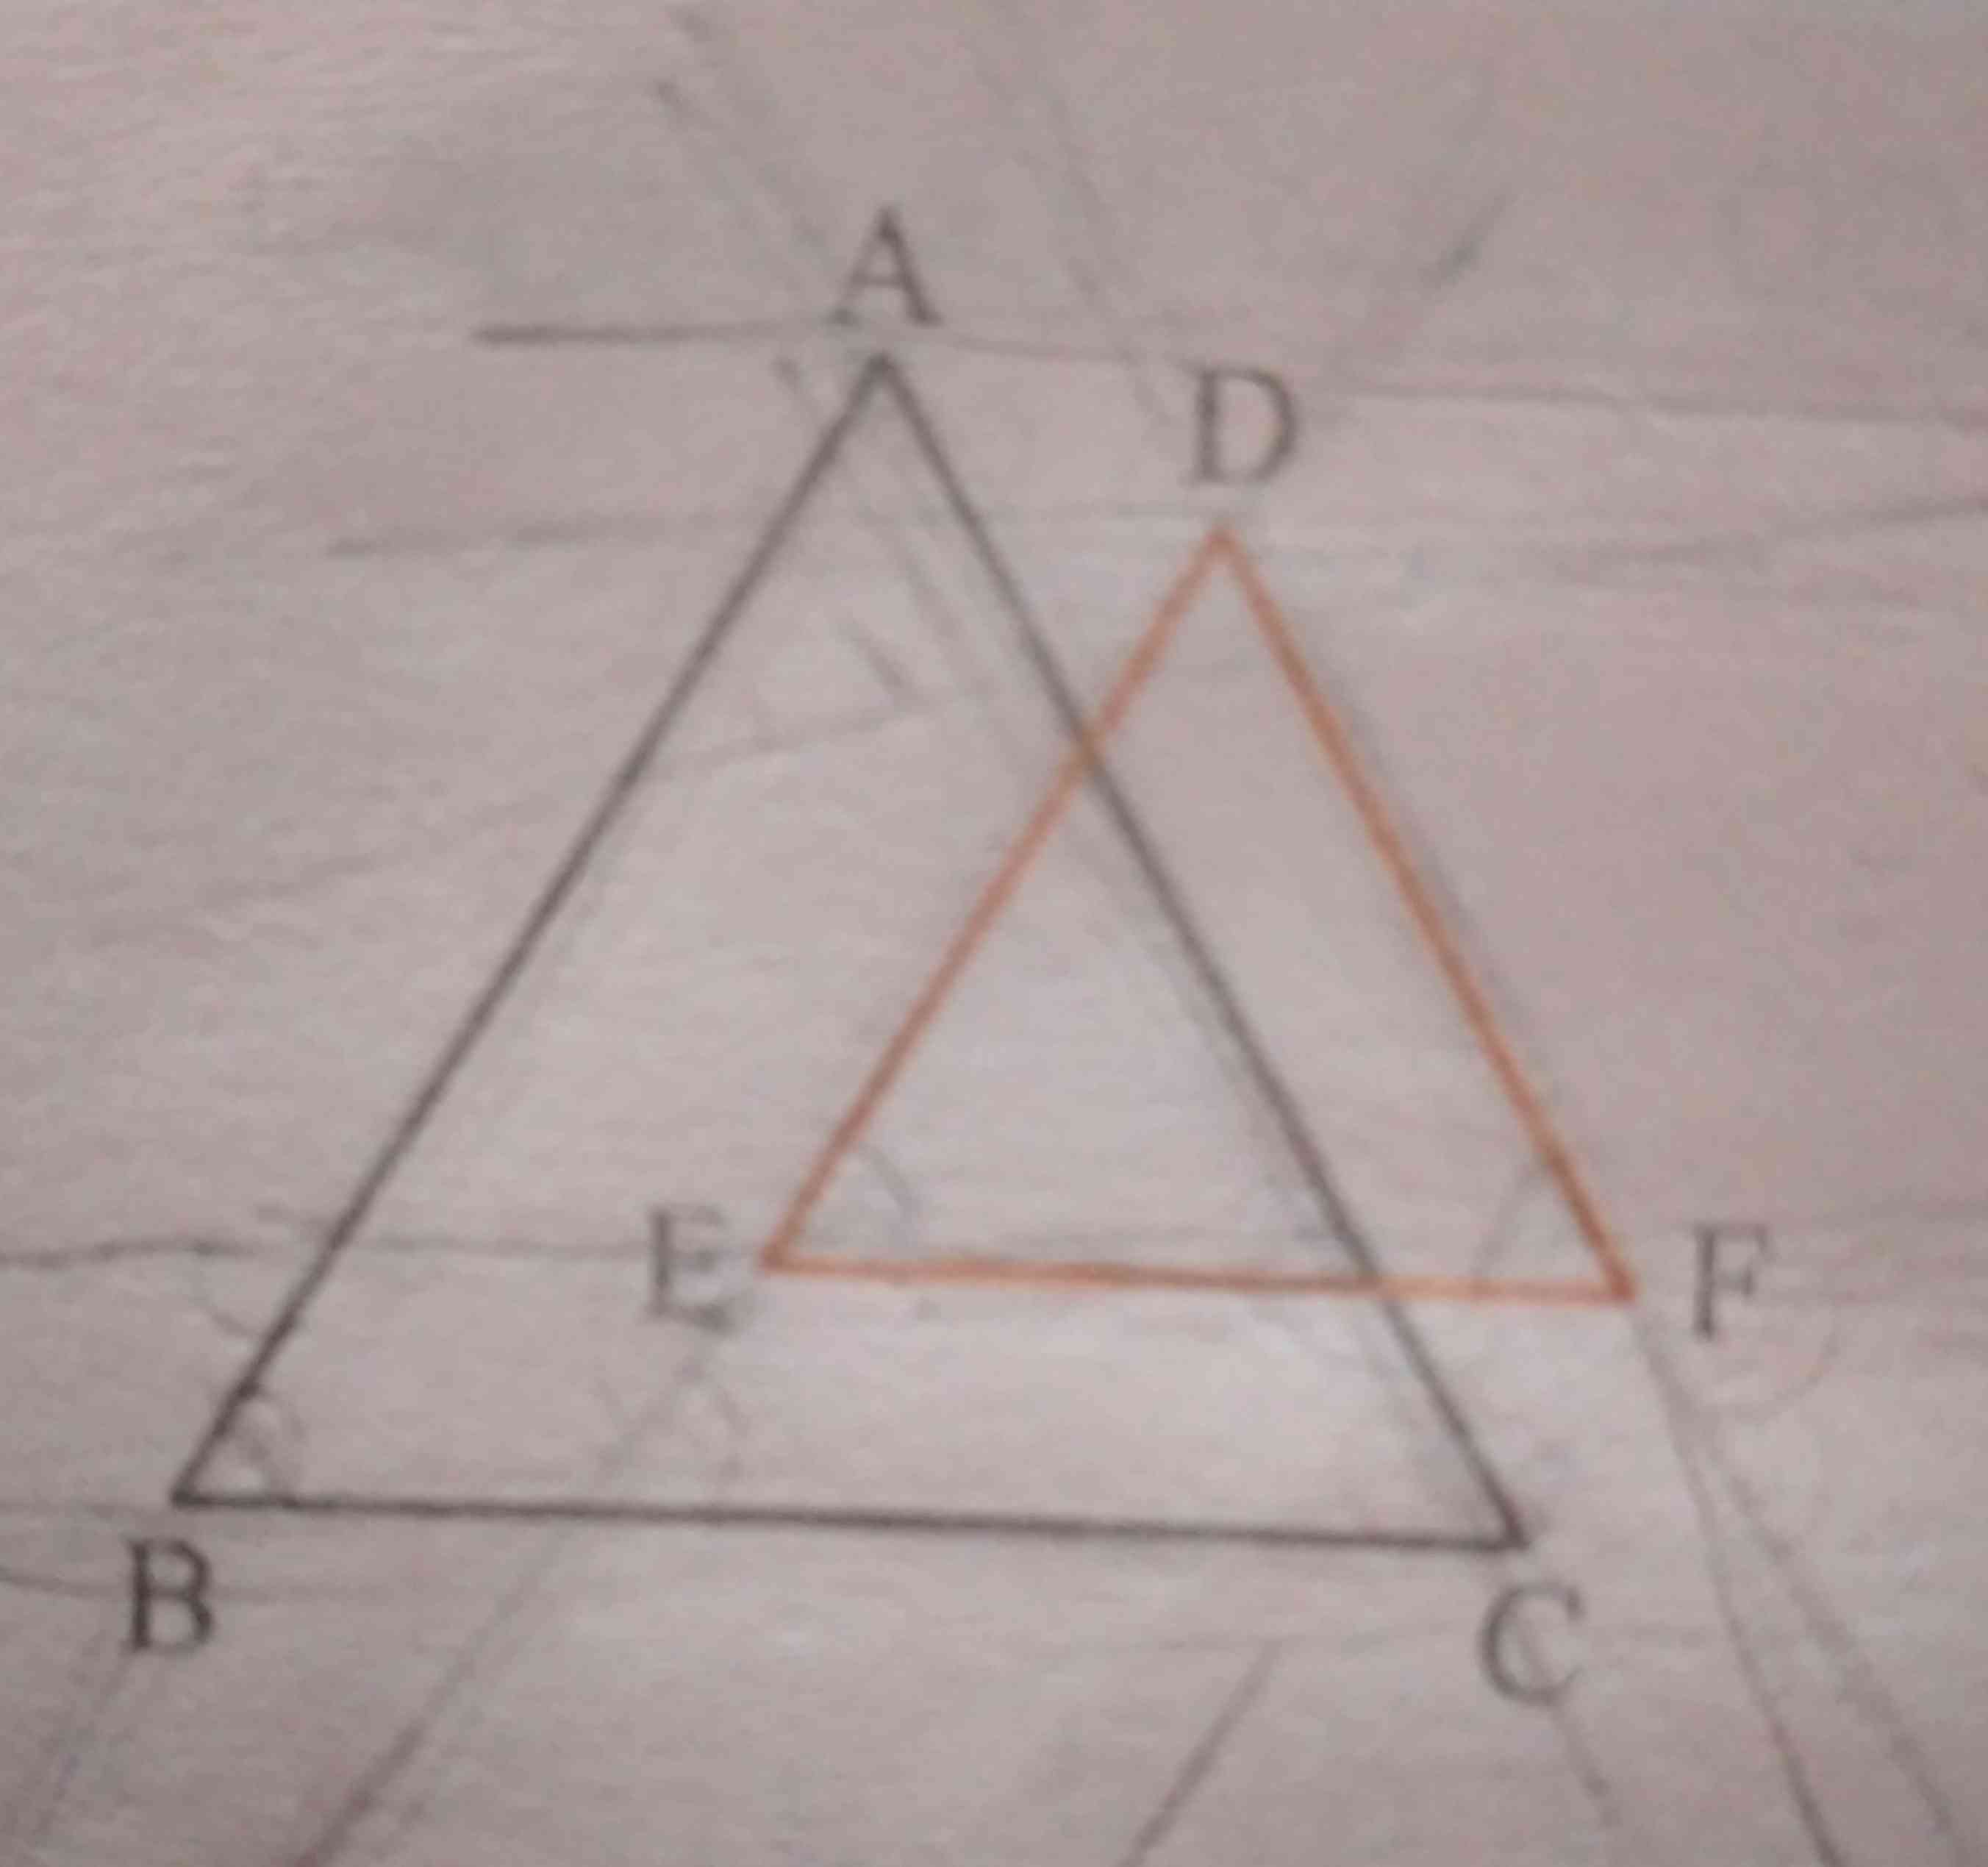 در شکل زیر اضلاع دو مثلث دو به دو موازیند آیا زوایای این دو مثلث مساوی اند  چرا تاج میدم 